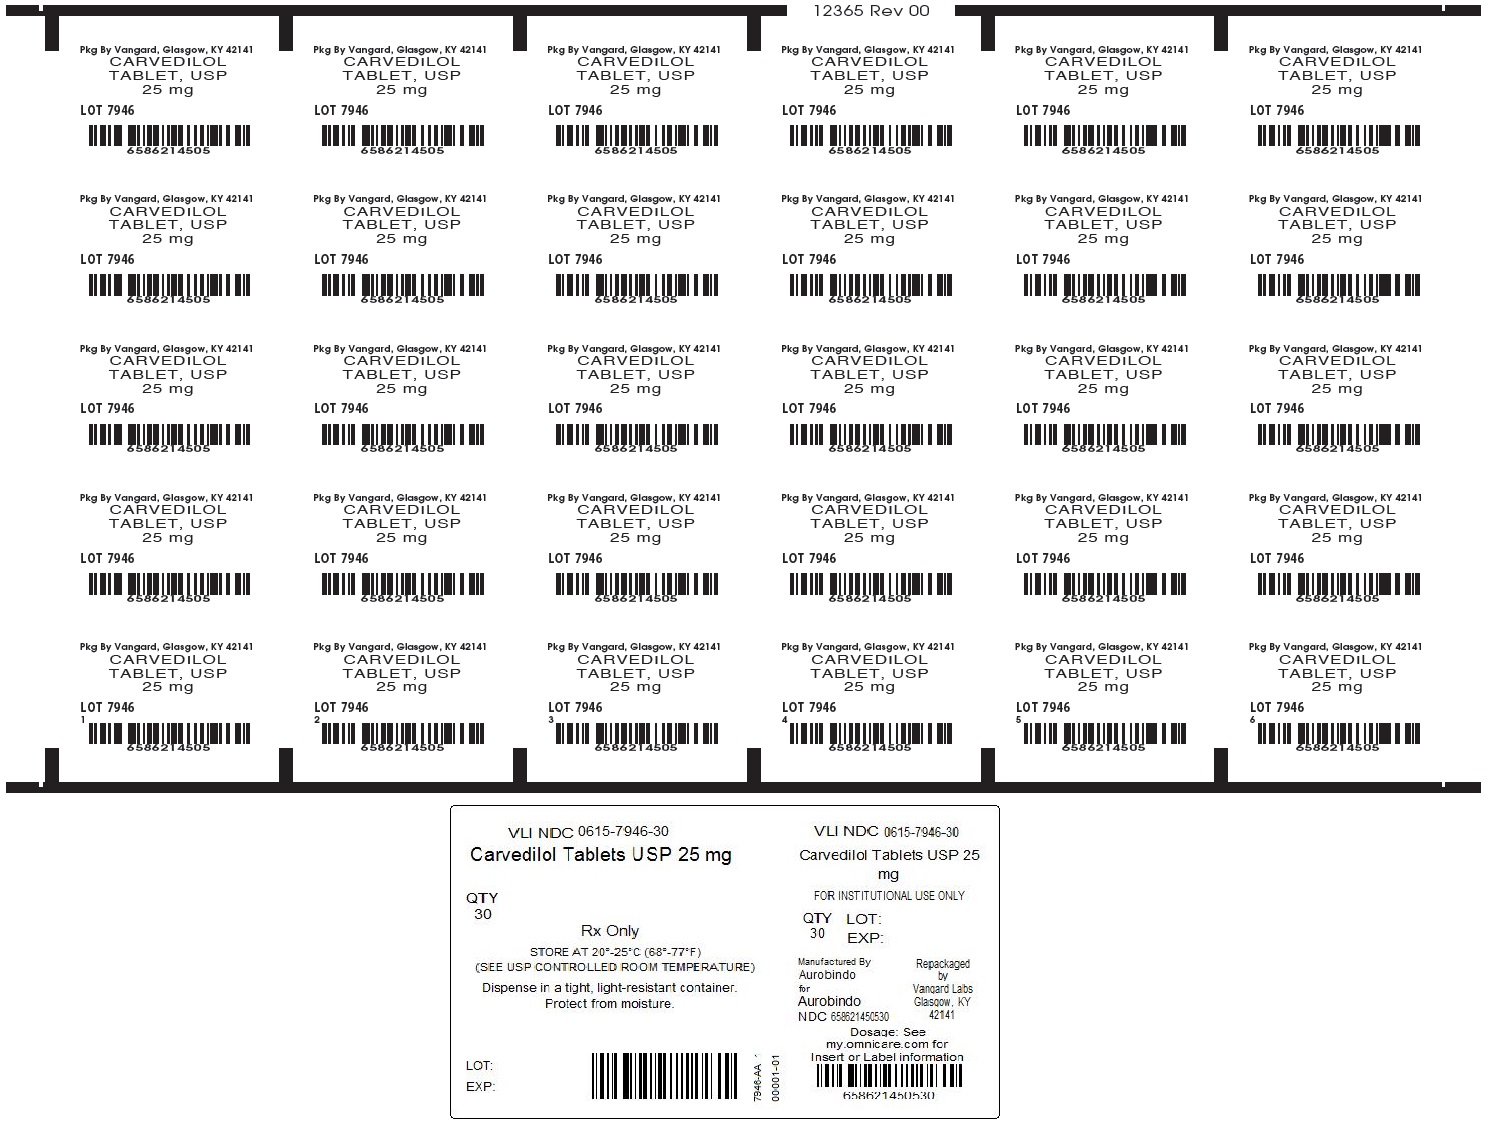 Carvedilol Tablets 25mg unit dose label